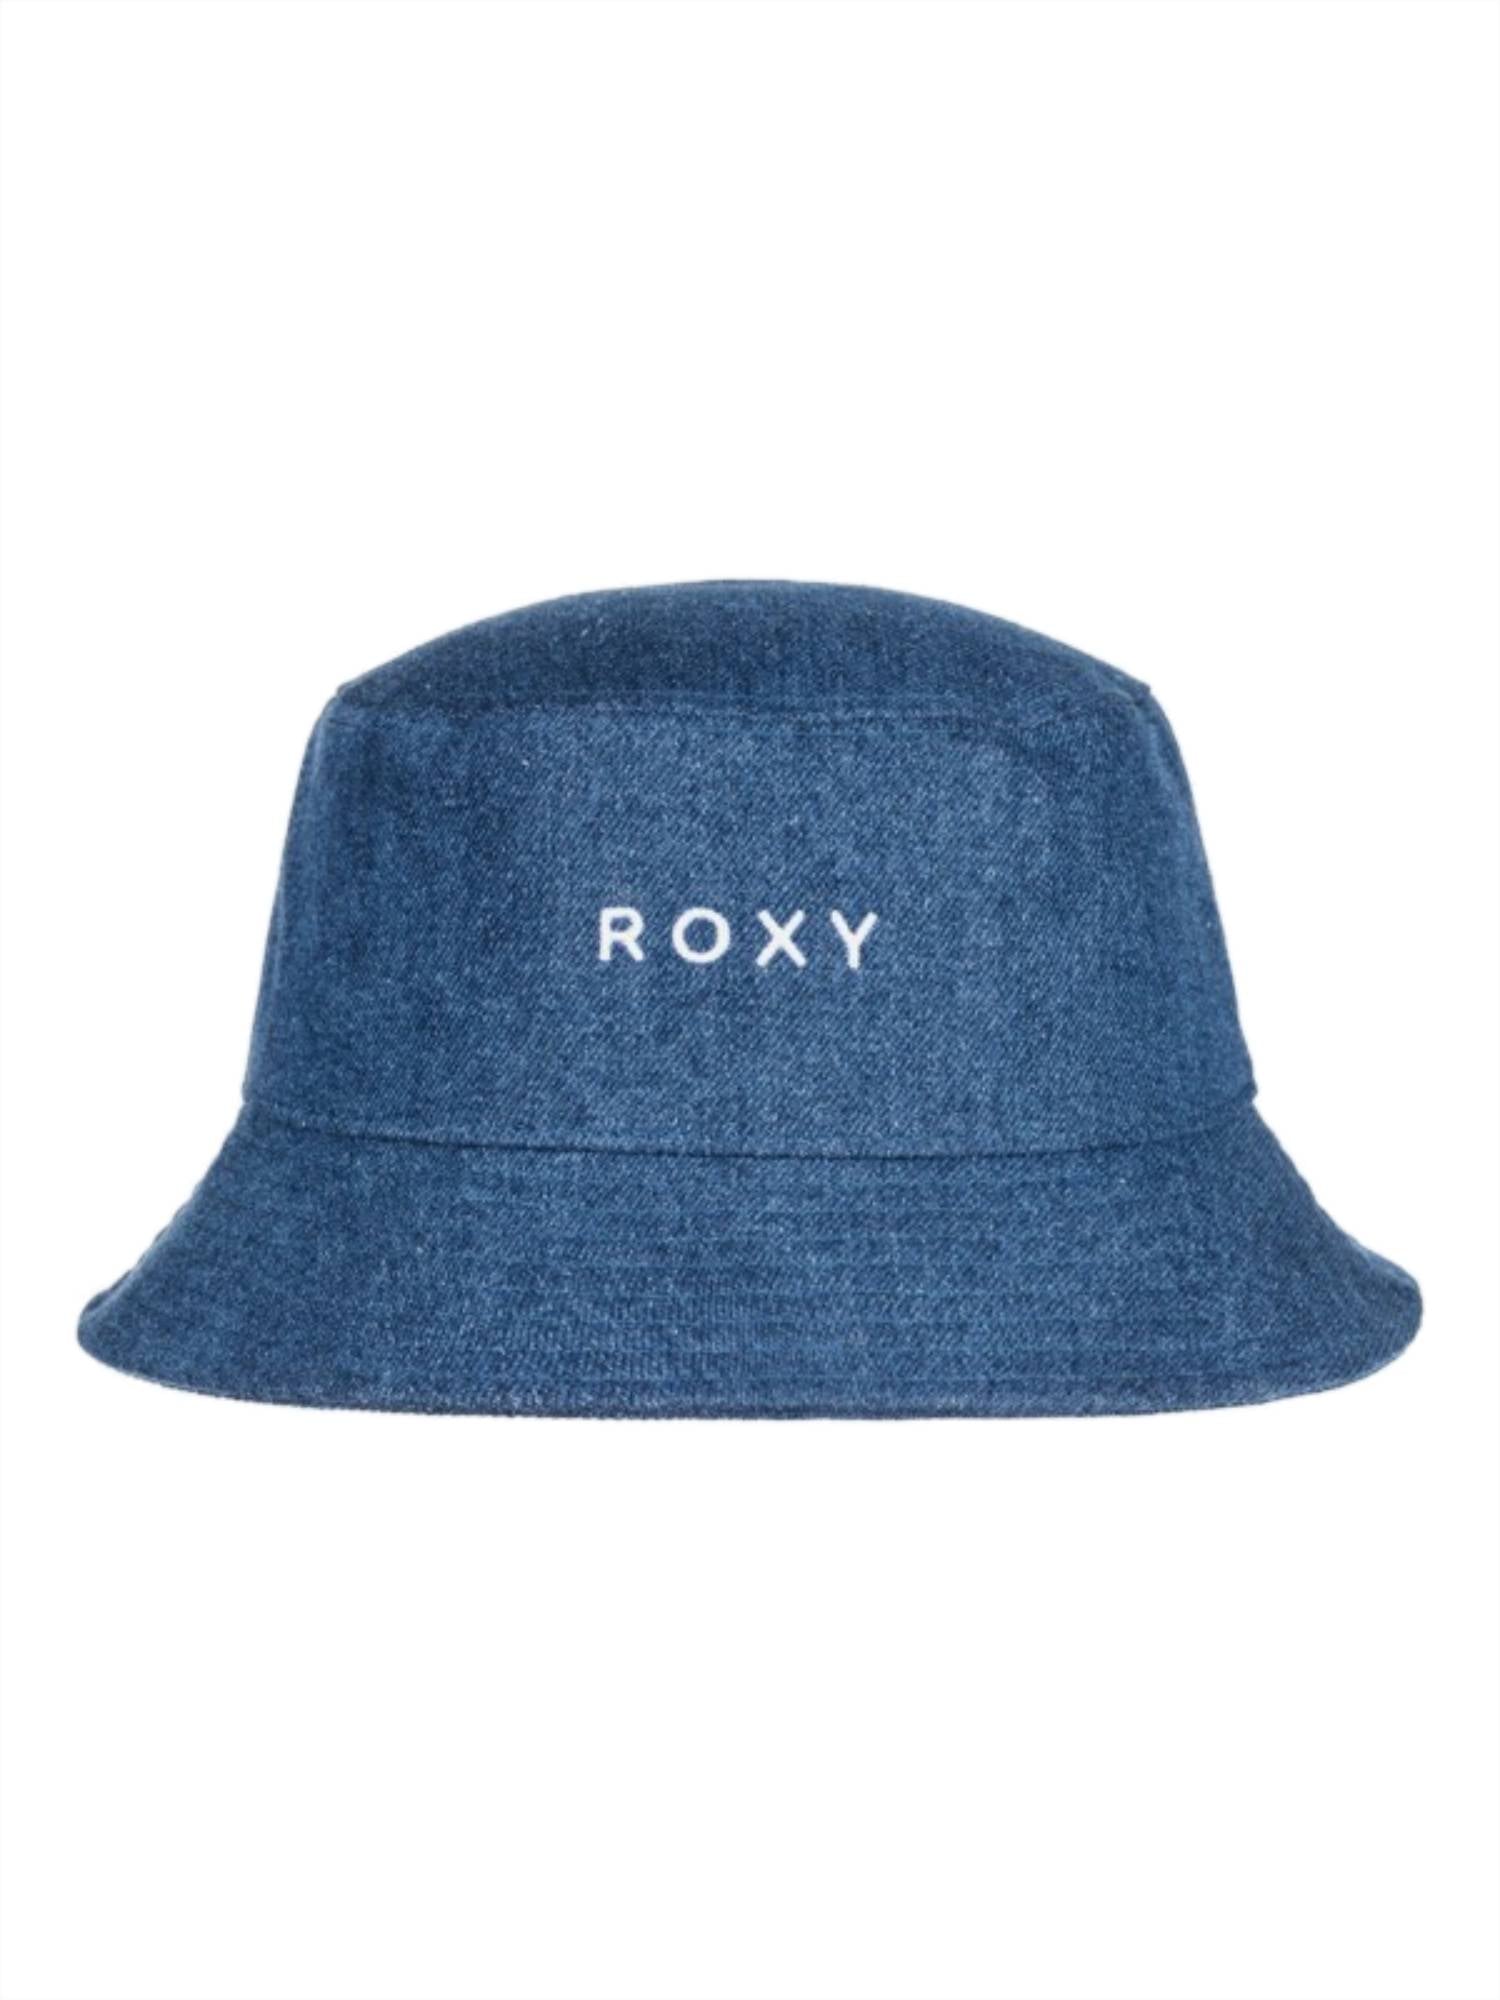 Roxy Cheek To Cheek Denim Bucket Hat BNJW M/L